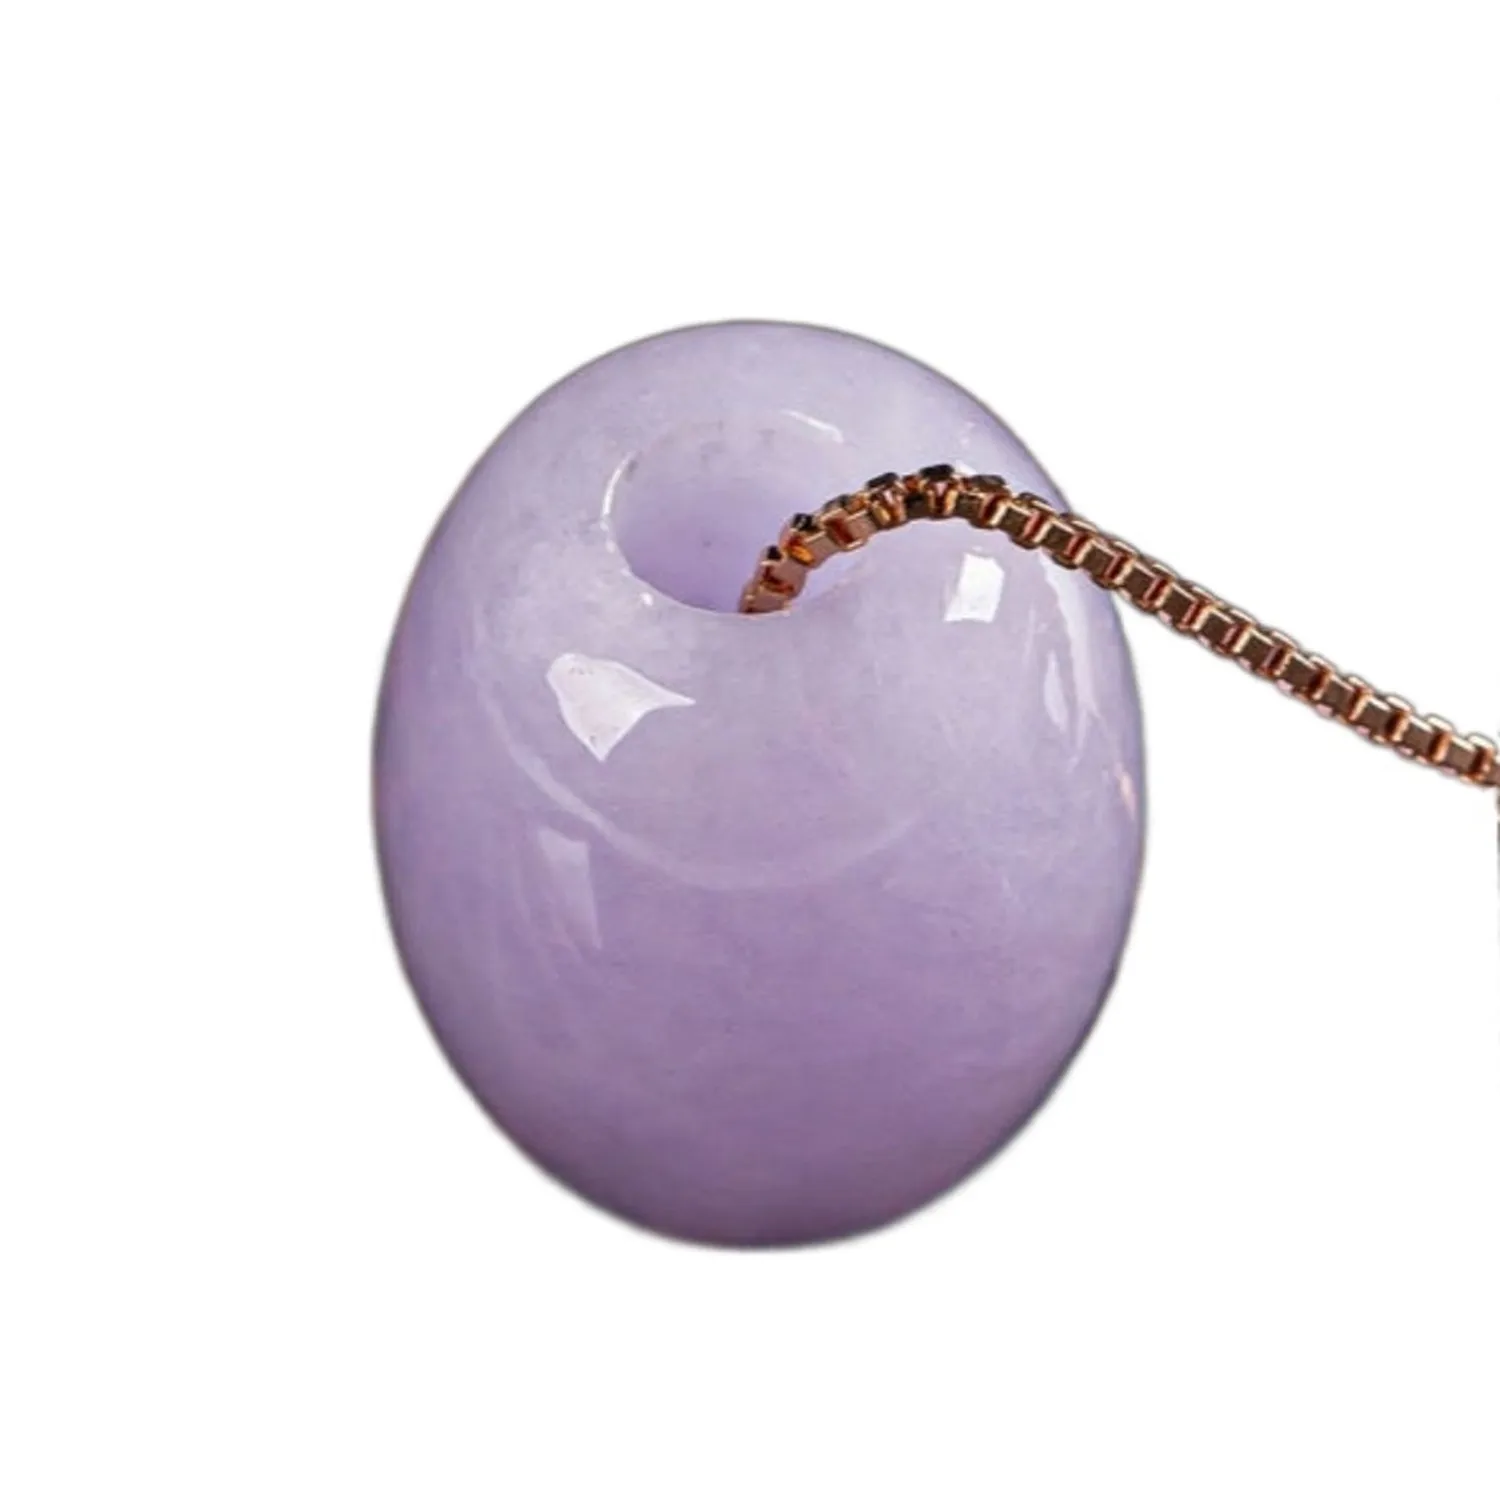 

Цепочка с подвеской из драгоценных камней цвета лаванды и фиолетового цвета